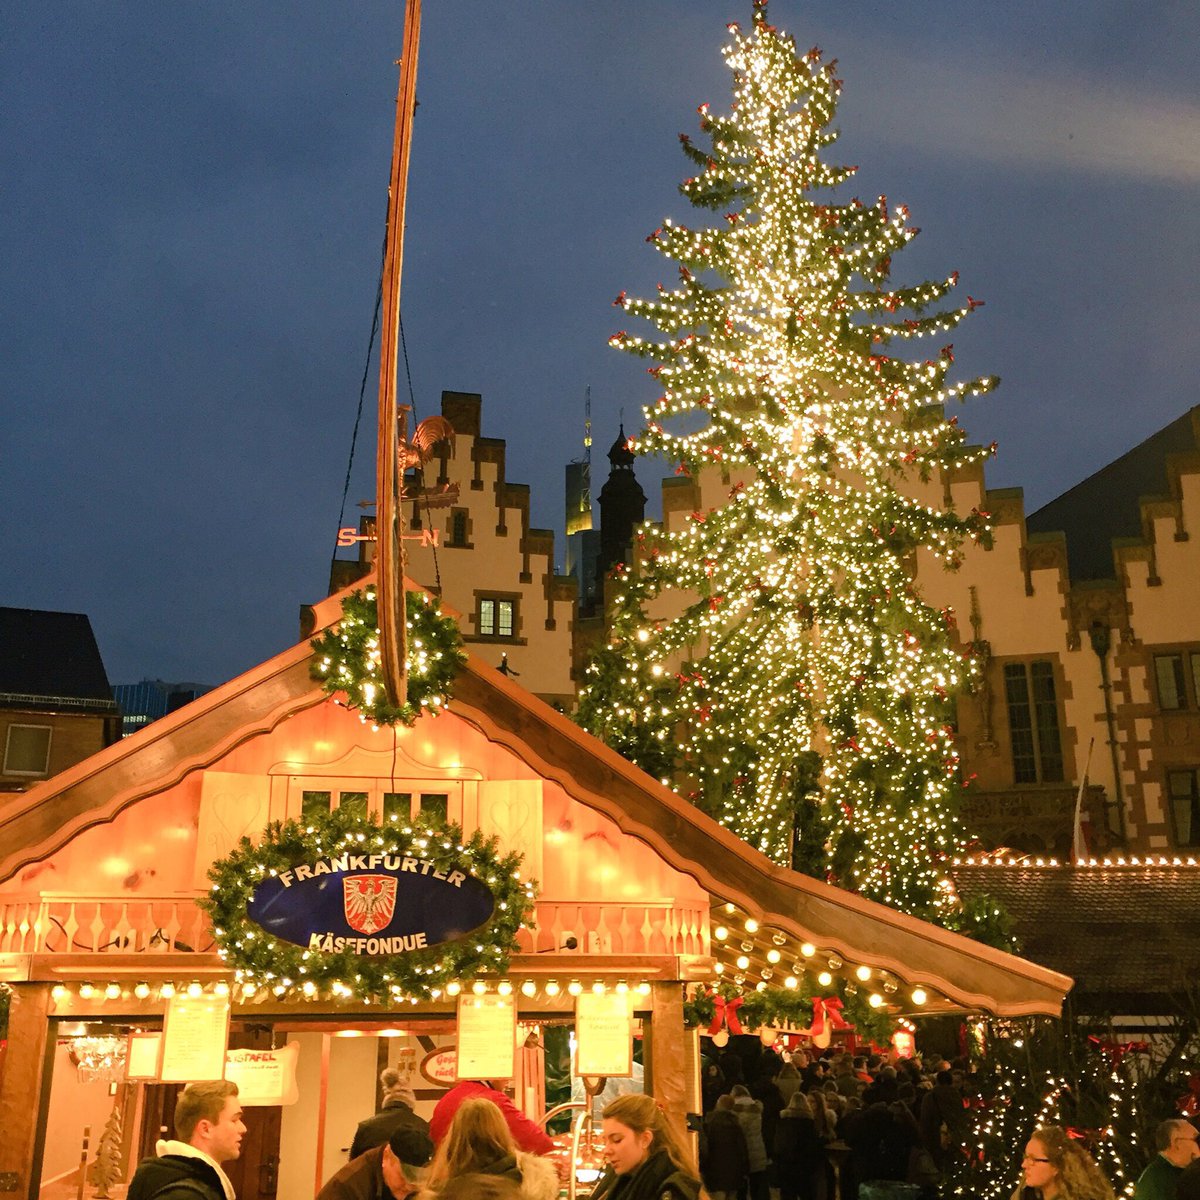 ট ইট র ドイツ幻想風景 商都として中世以来繁栄を極めるフランクフルトのクリスマス マーケット イルミネーションが盛大で まさにきらびやかな光の祭典 このマーケットを象徴する食べ物といえば やっぱり黄金のアーモンドでしょう クリスマスと冬のドイツ